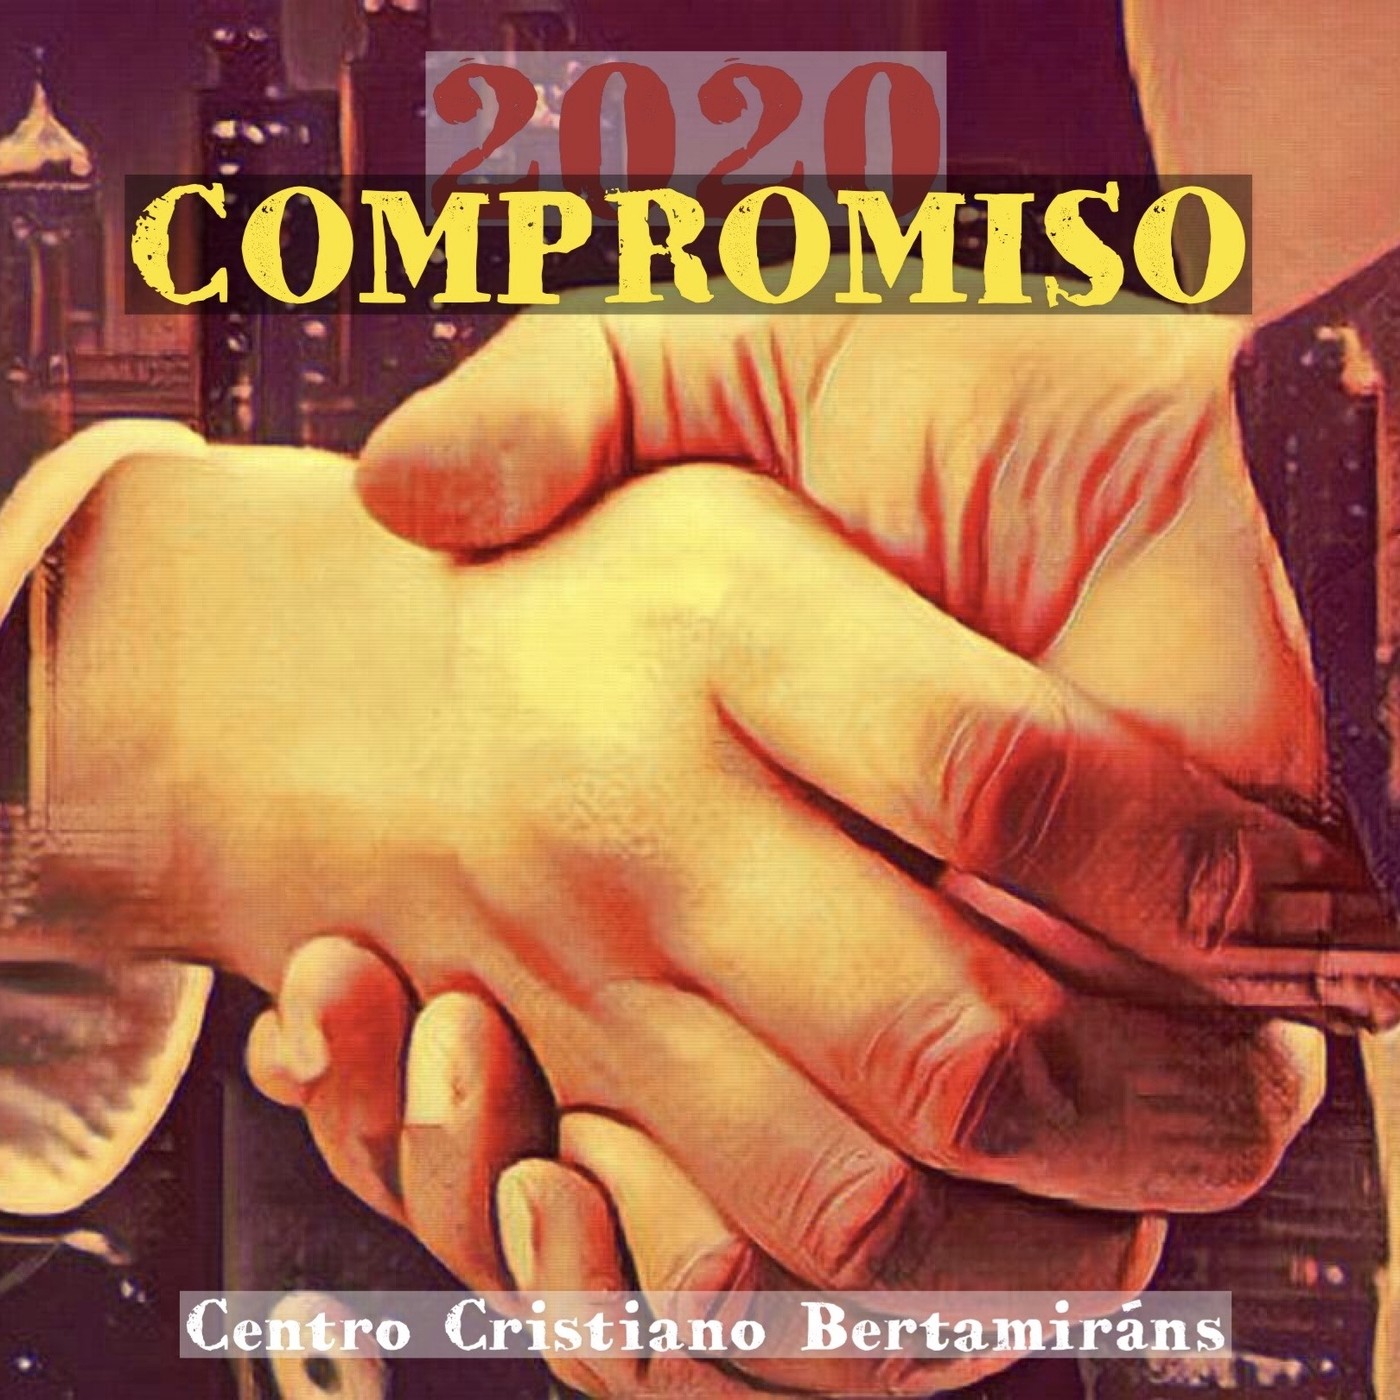 EL PRIMER COMPROMISO - 02/02/2020 - Miguel Vilas